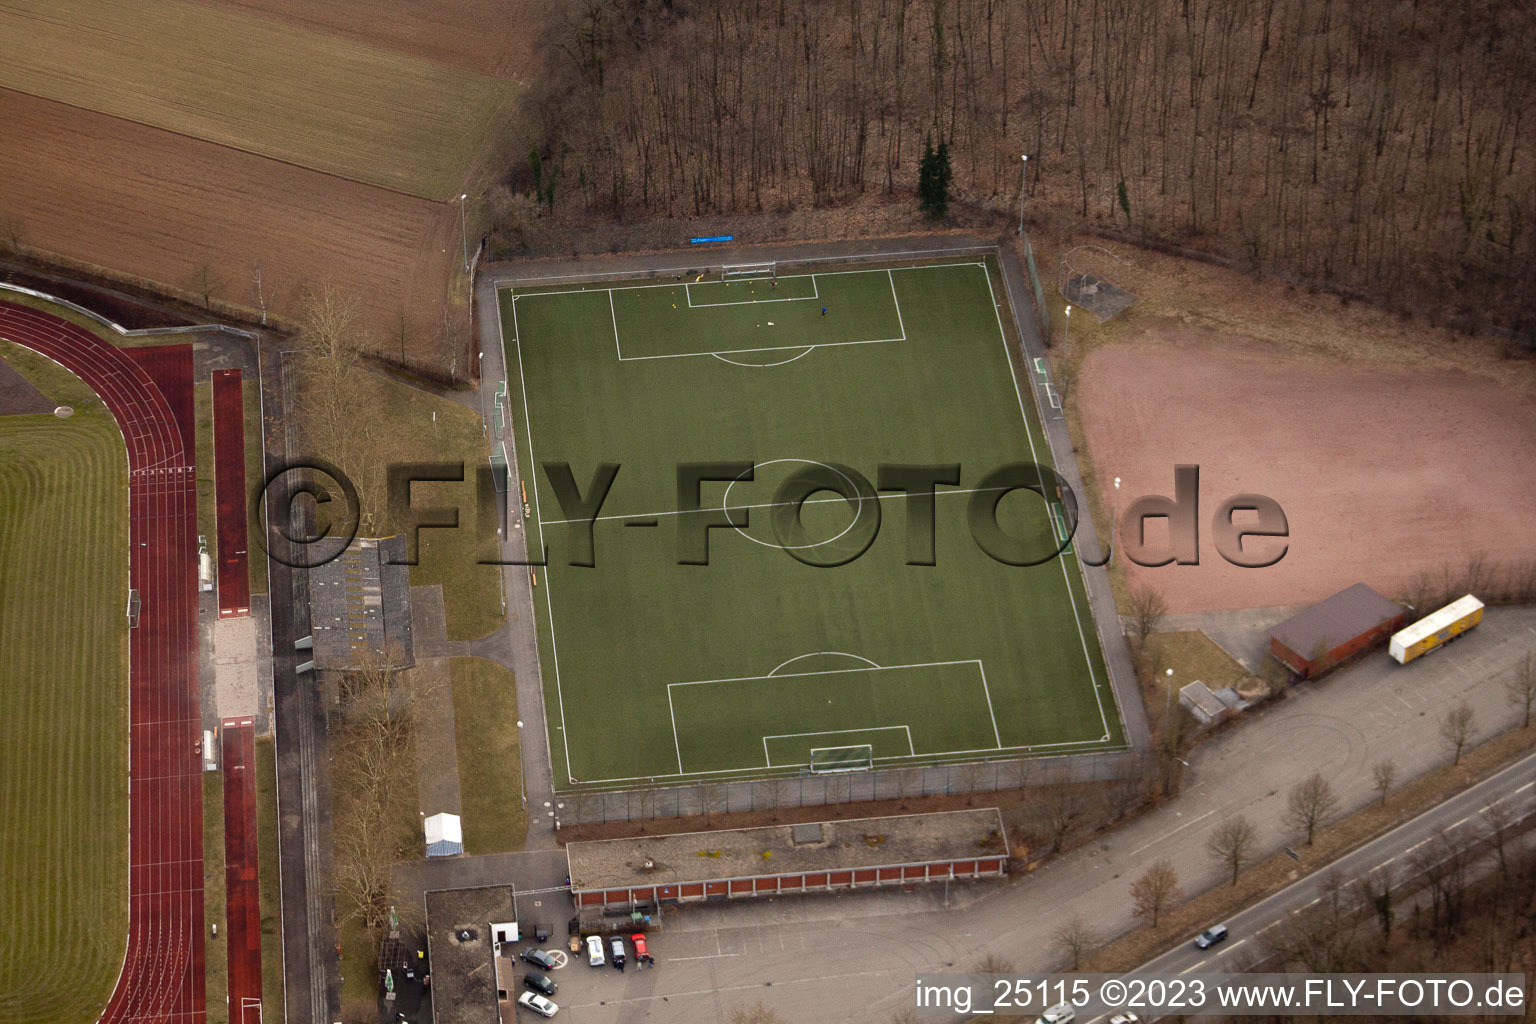 Luftbild von Schwetzingen, Sportplatz im Bundesland Baden-Württemberg, Deutschland